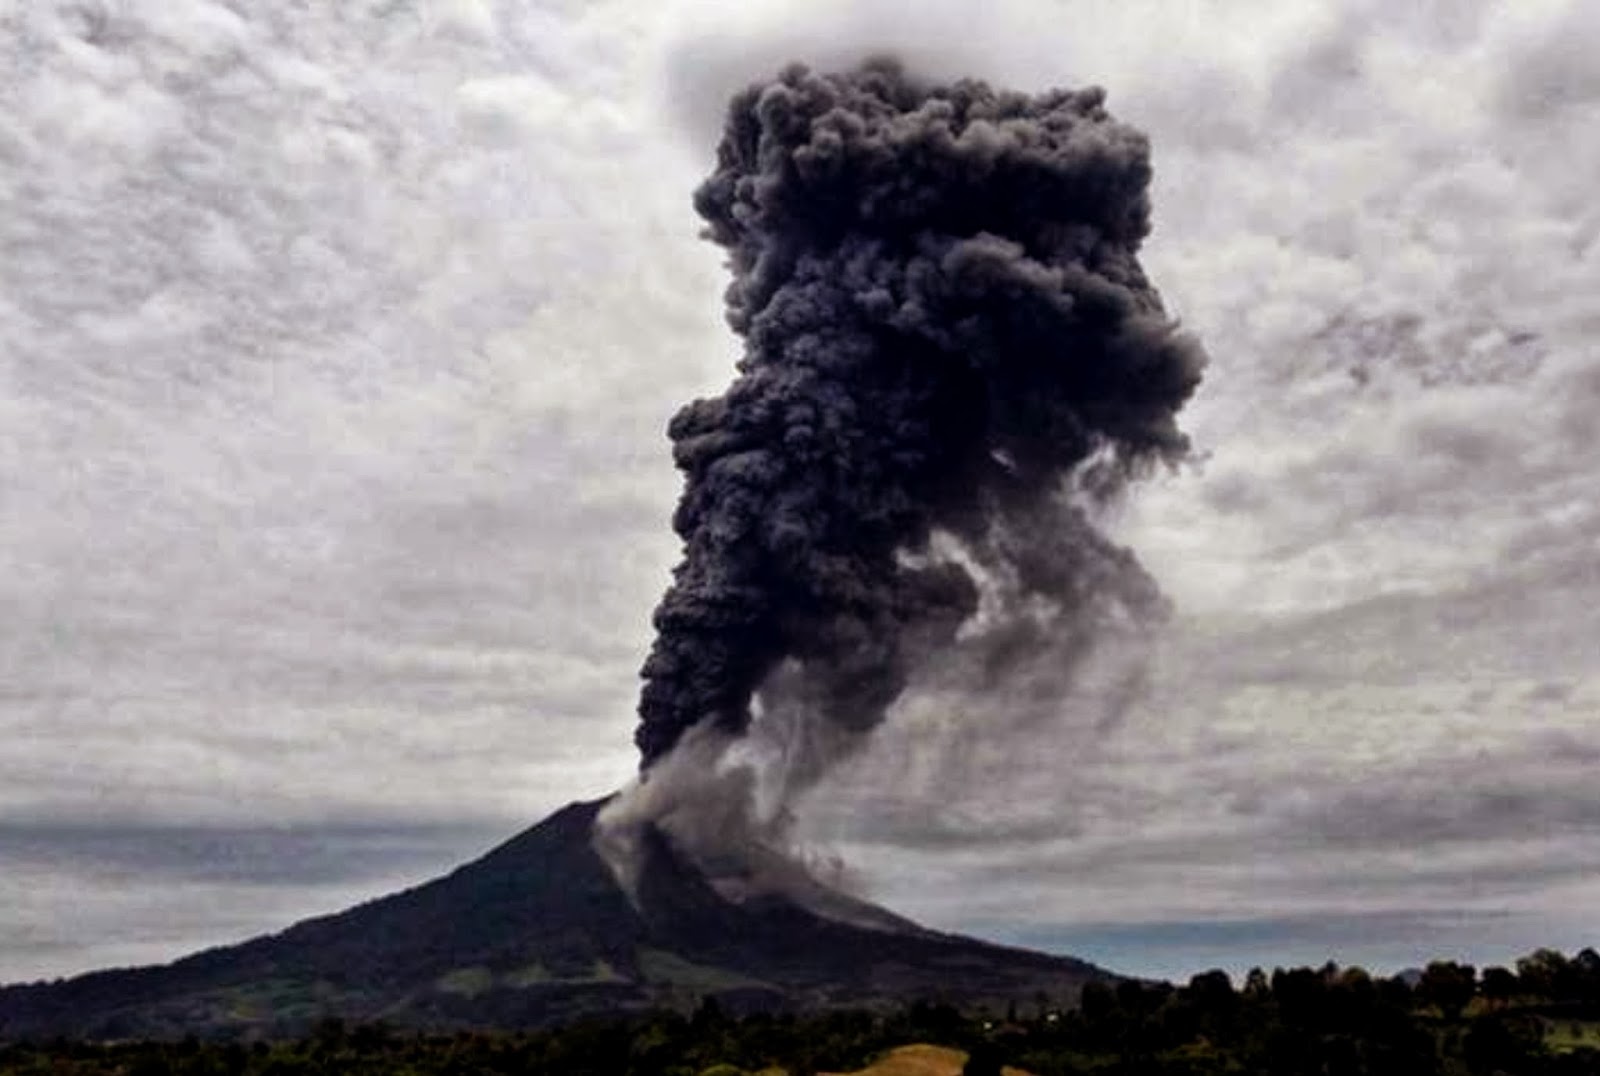 SEGUIMIENTO MUNDIAL DE VOLCANES. - Página 8 Monte-sinabung-indonesia-erupcion-17092013-4-mn2-ind+(1)